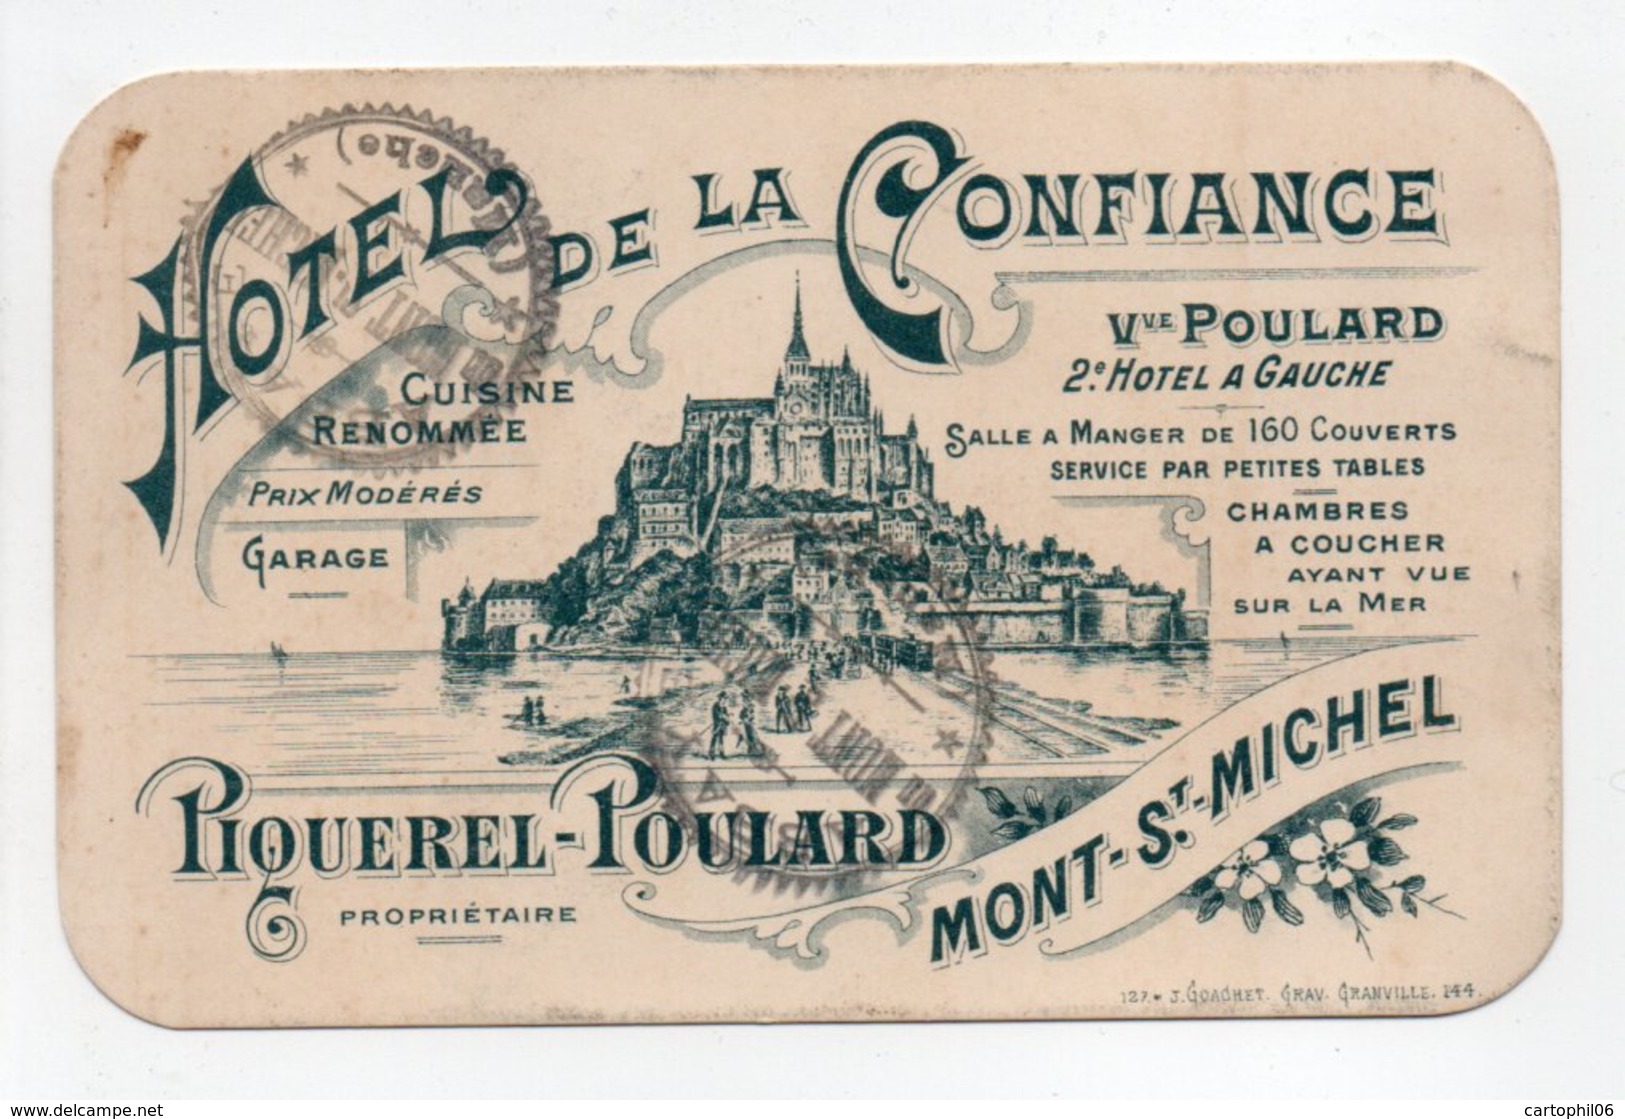 - Carte De Visite HOTEL DE LA CONFIANCE - PIQUEREL-POULARD - MONT-ST-MICHEL - - Cartes De Visite